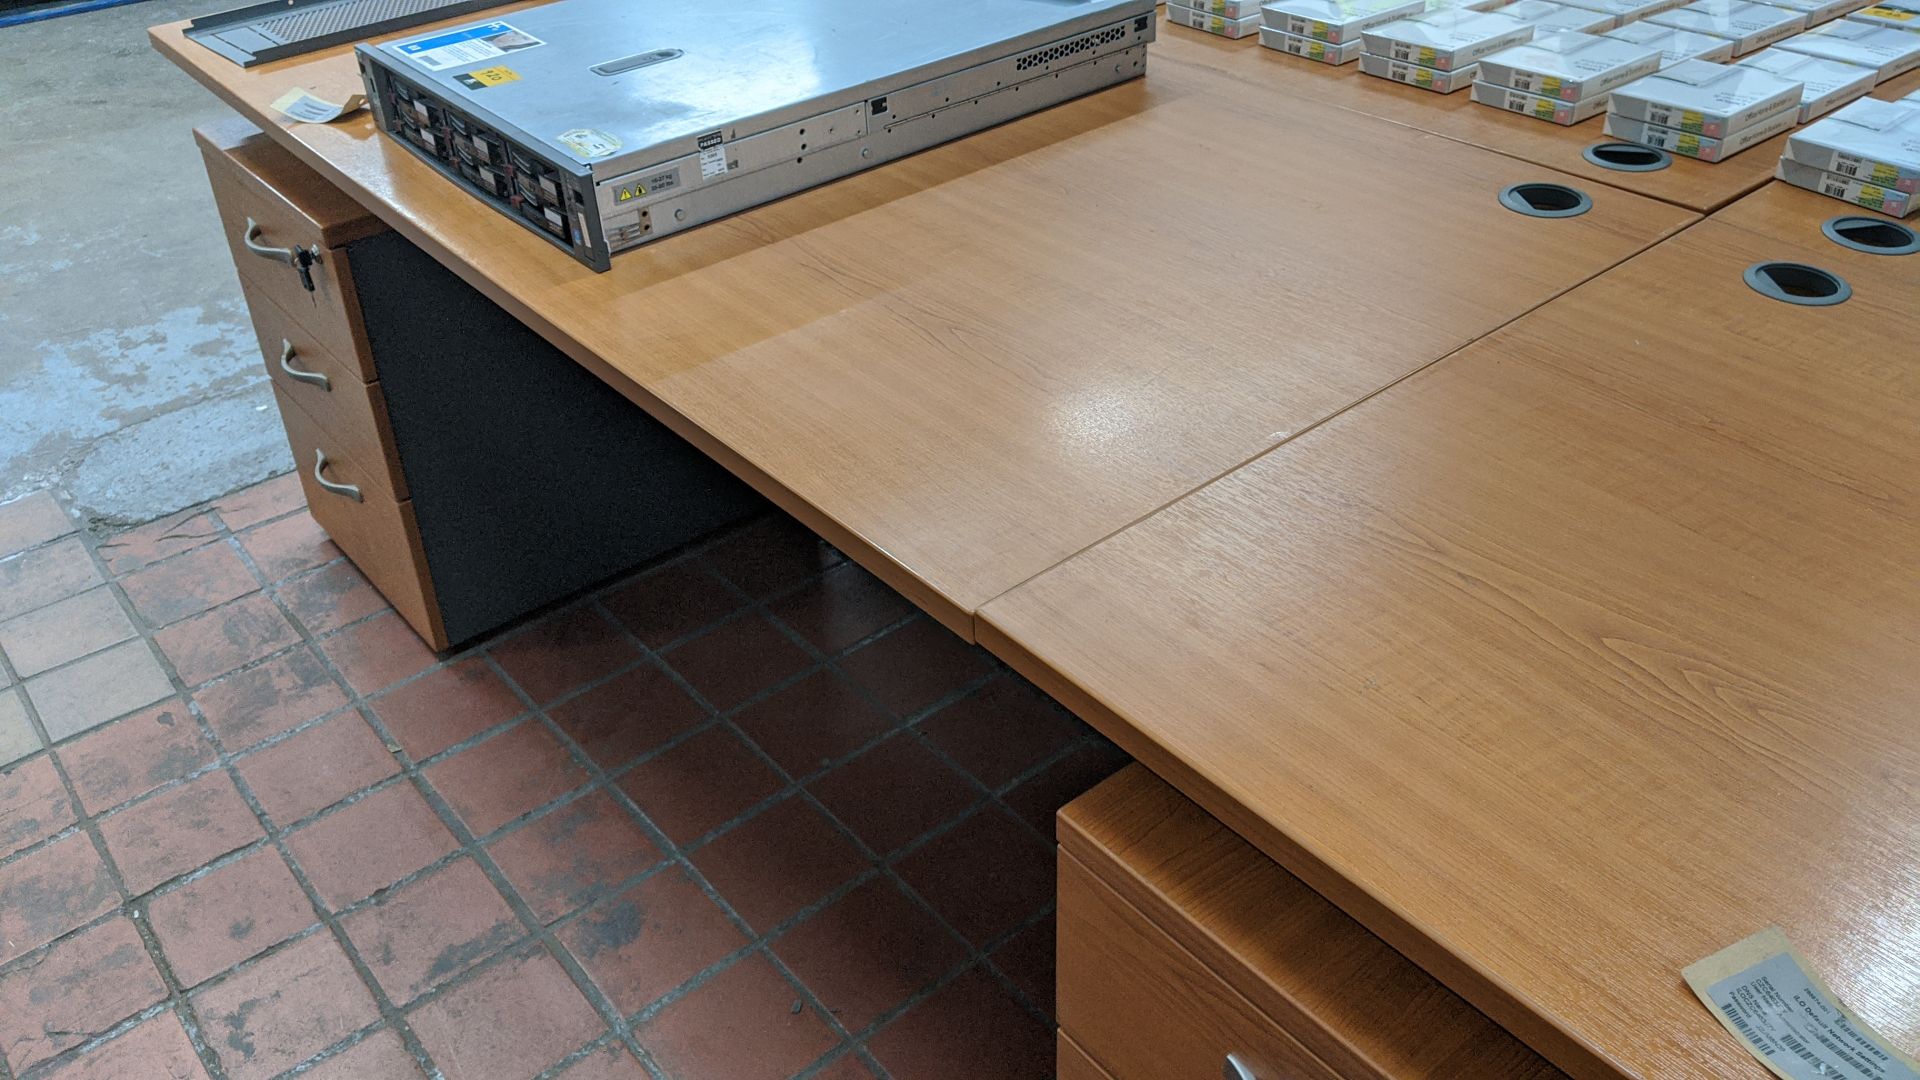 3 off matching desks each with under desk mobile pedestal, desk tops measuring circa 160cm x 80cm, - Image 4 of 6